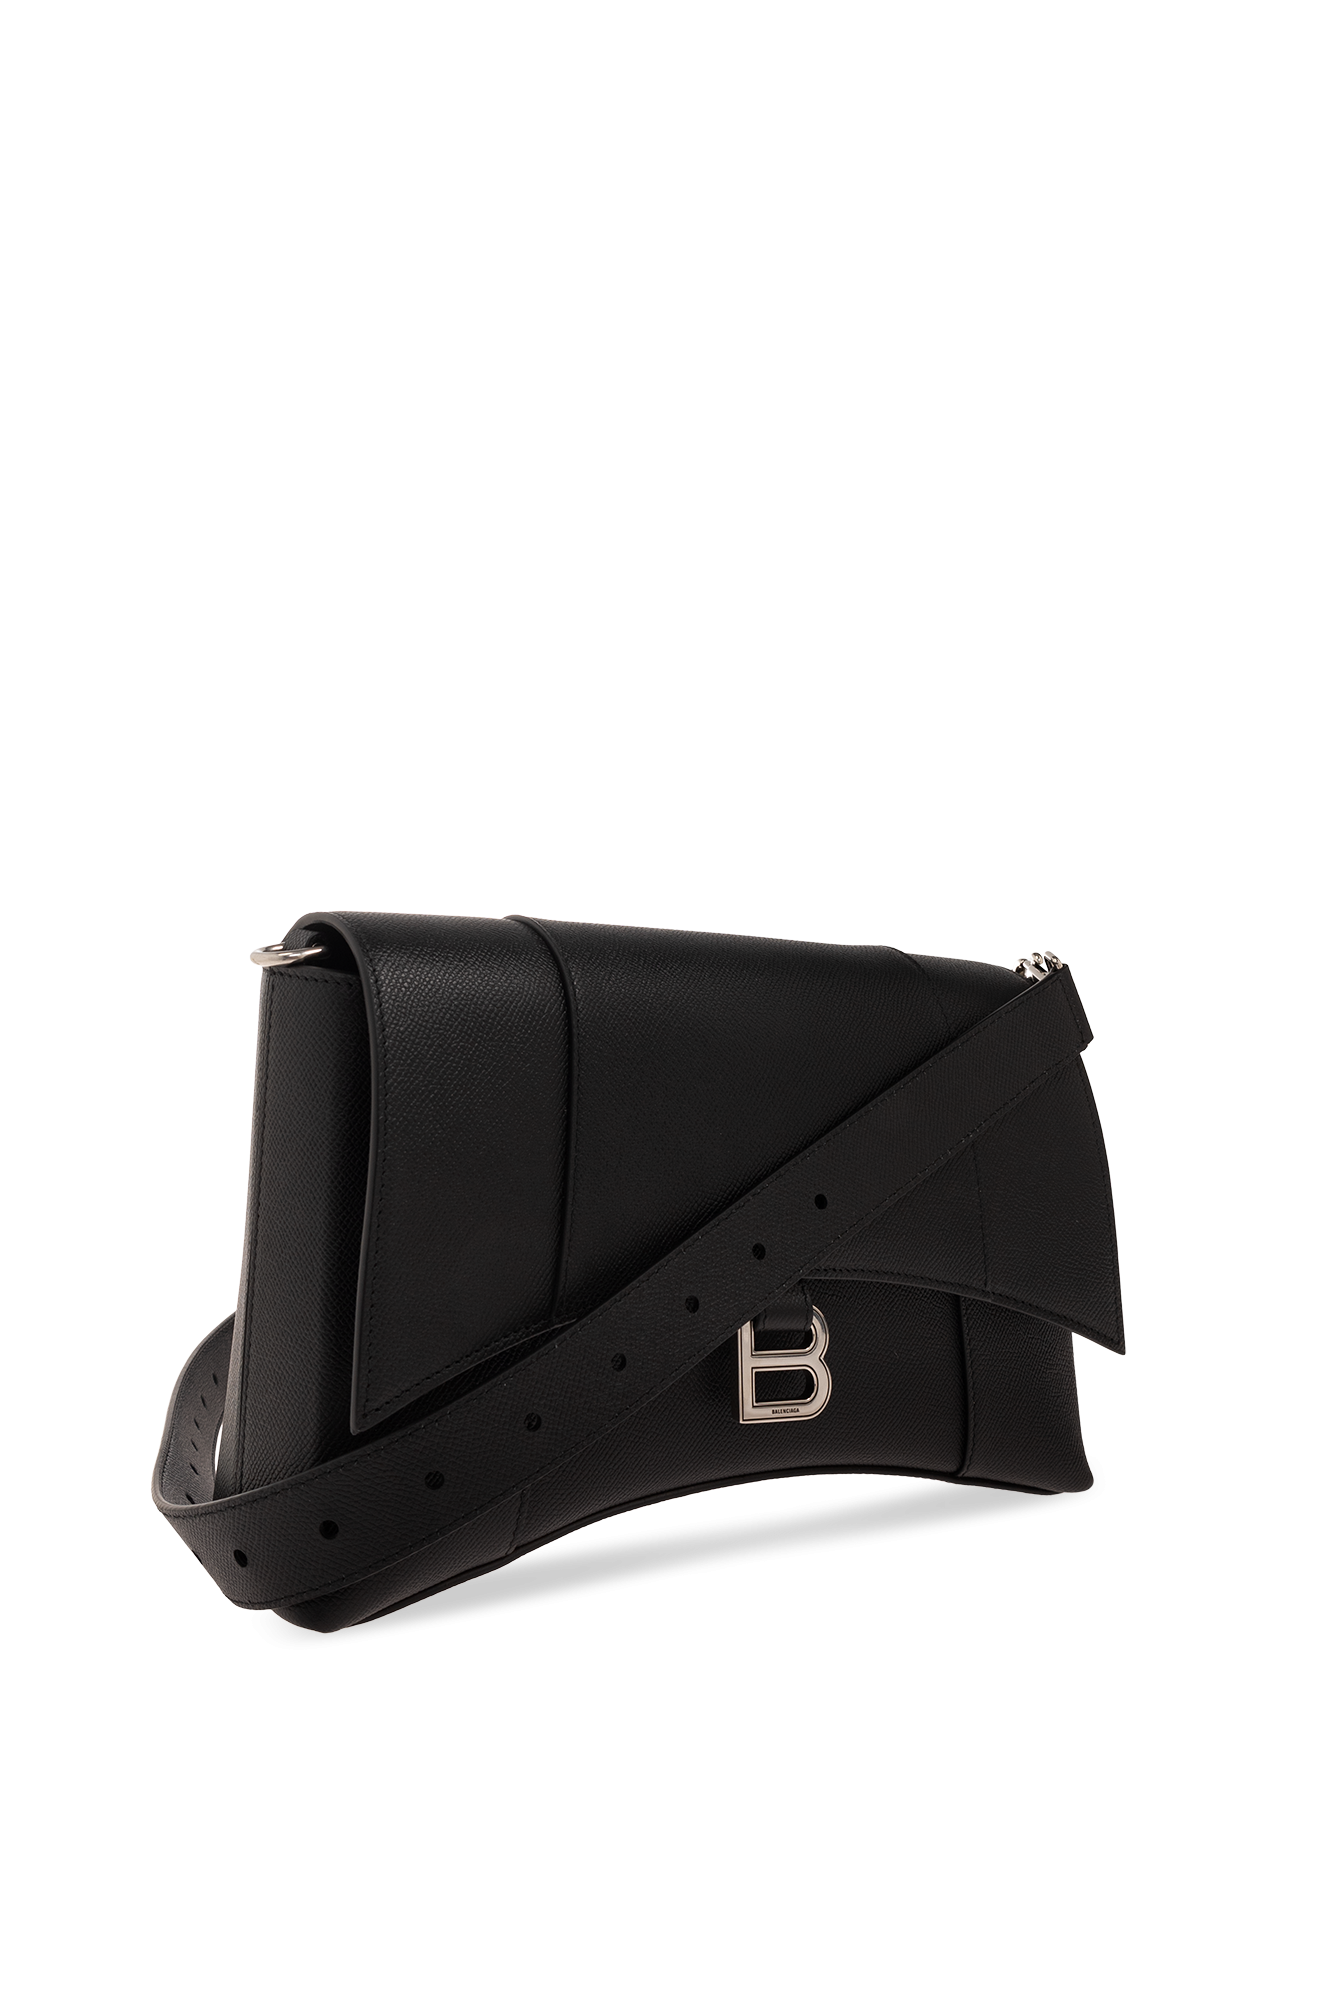 Balenciaga ‘Downtown’ shoulder bag